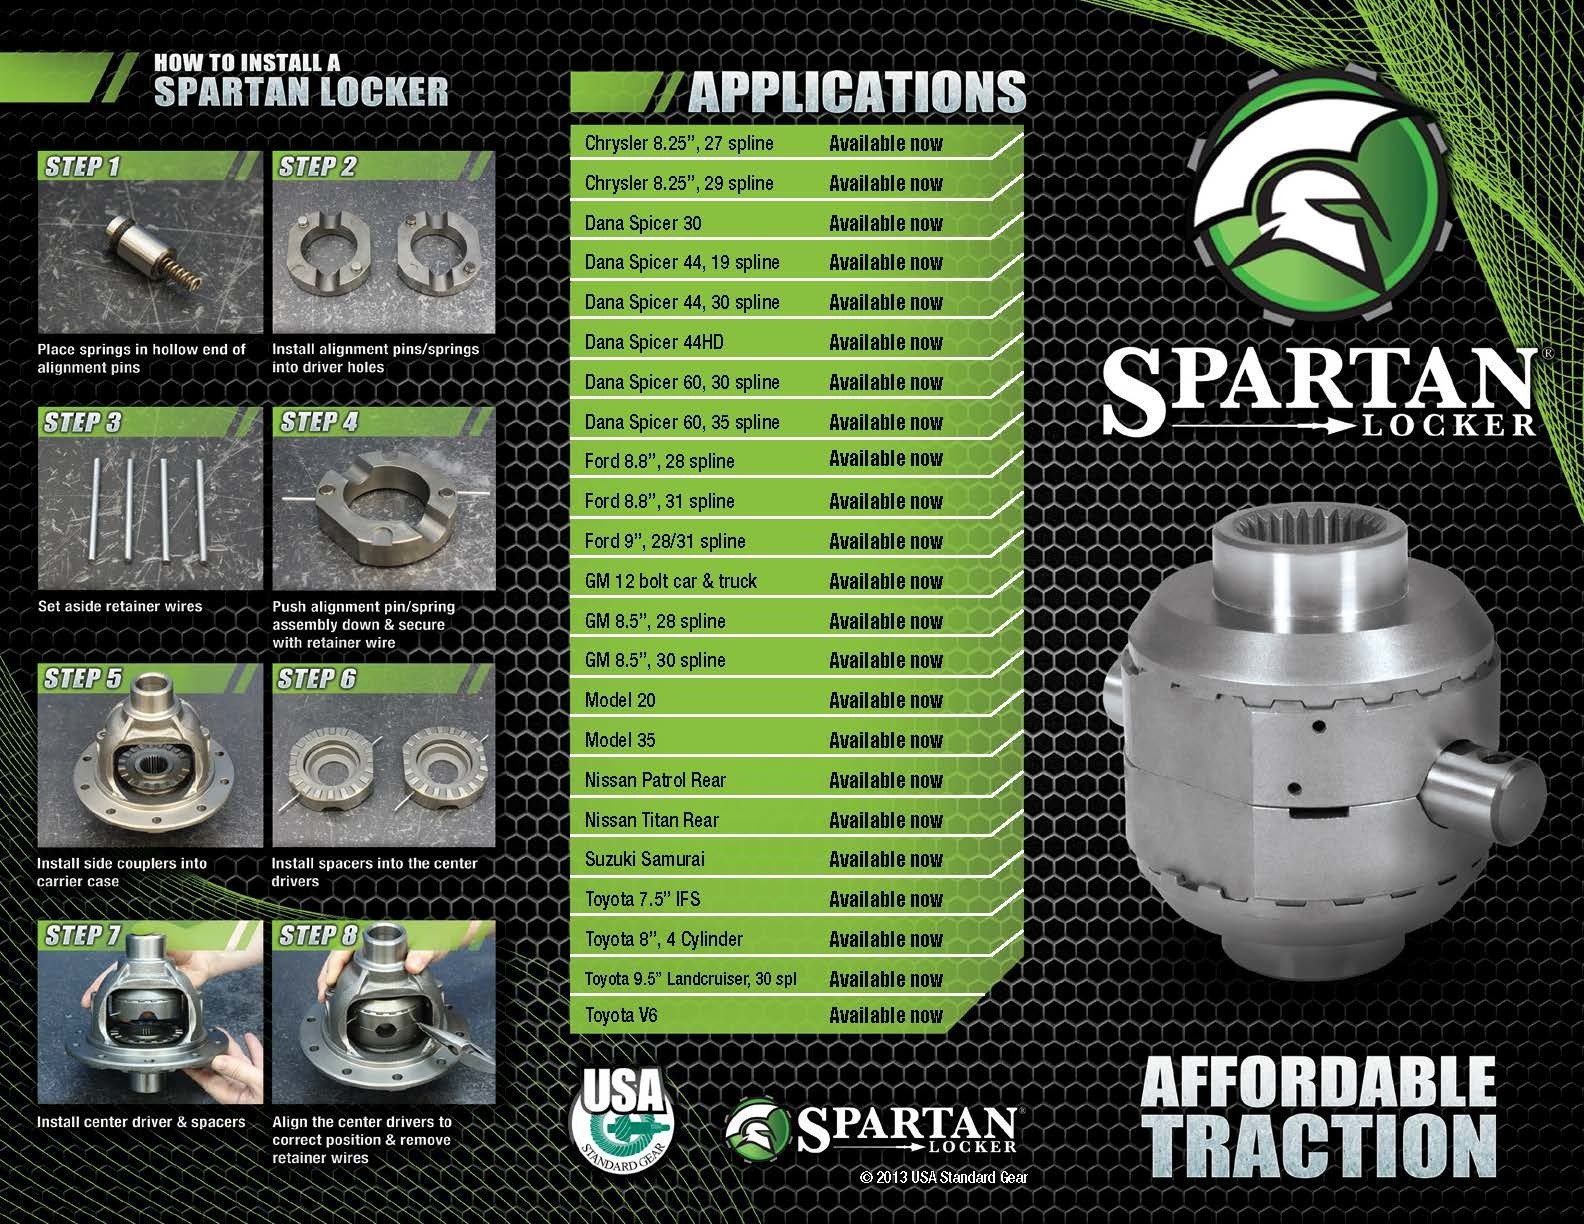 Spartan Locker heavy-duty repalcement cross pin shaft, Ford 8.8" diff, 31 spline